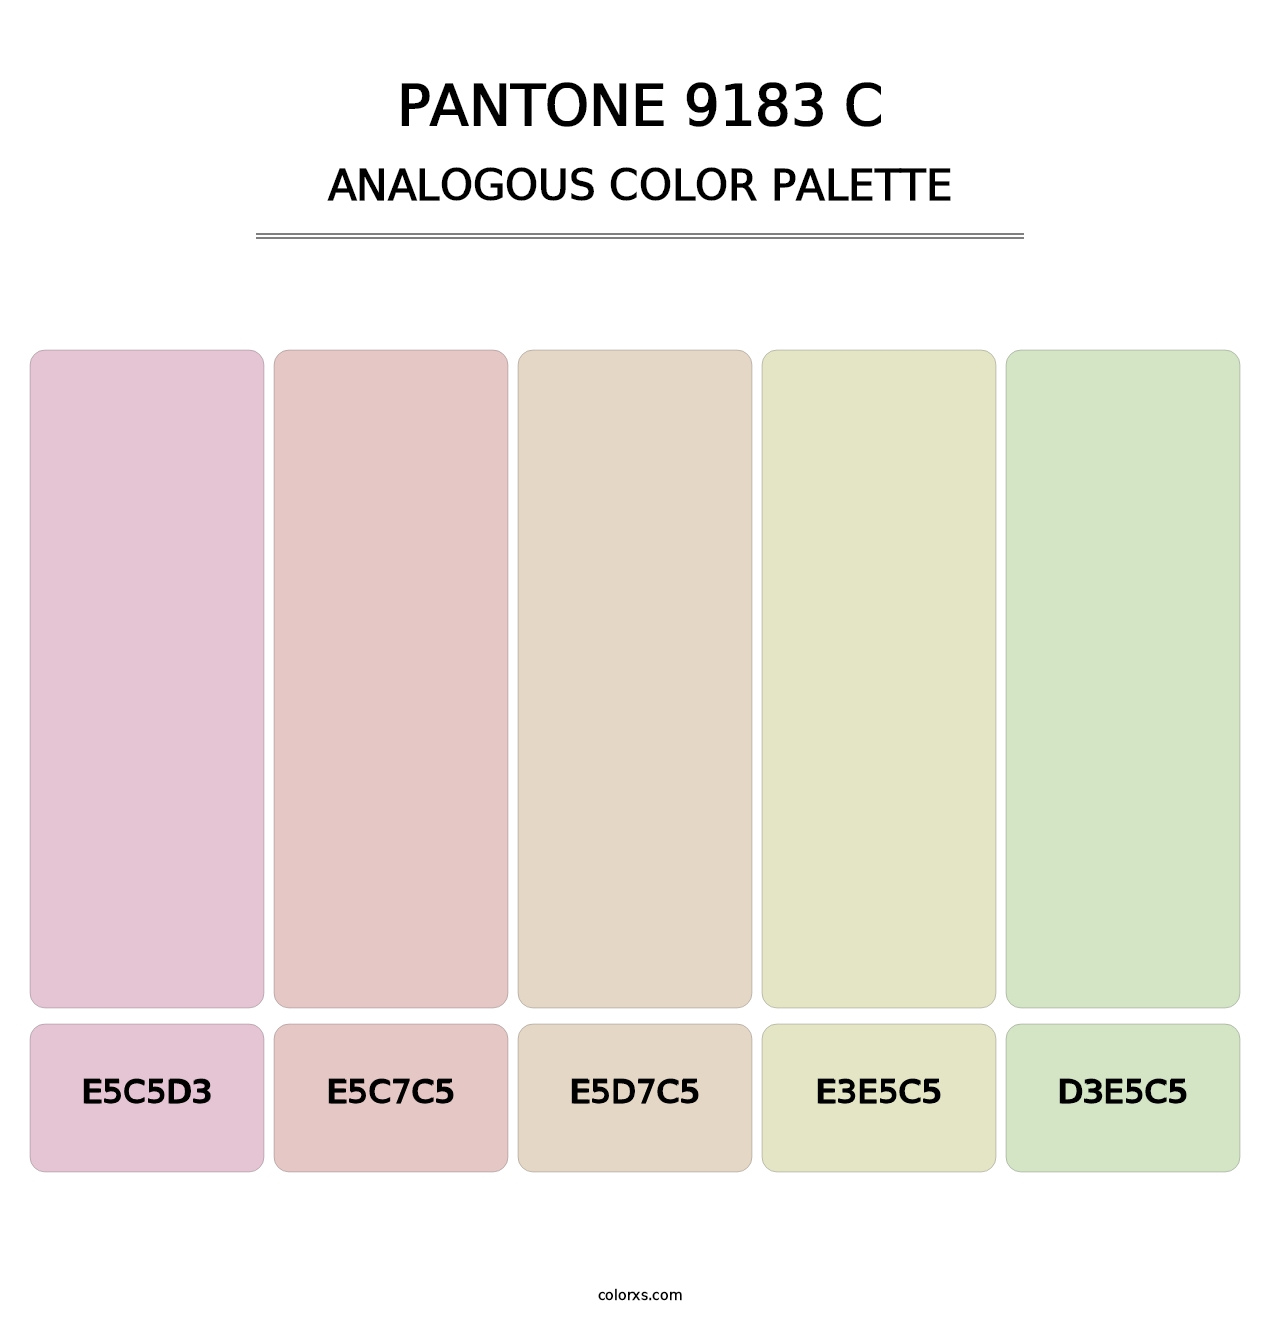 PANTONE 9183 C - Analogous Color Palette